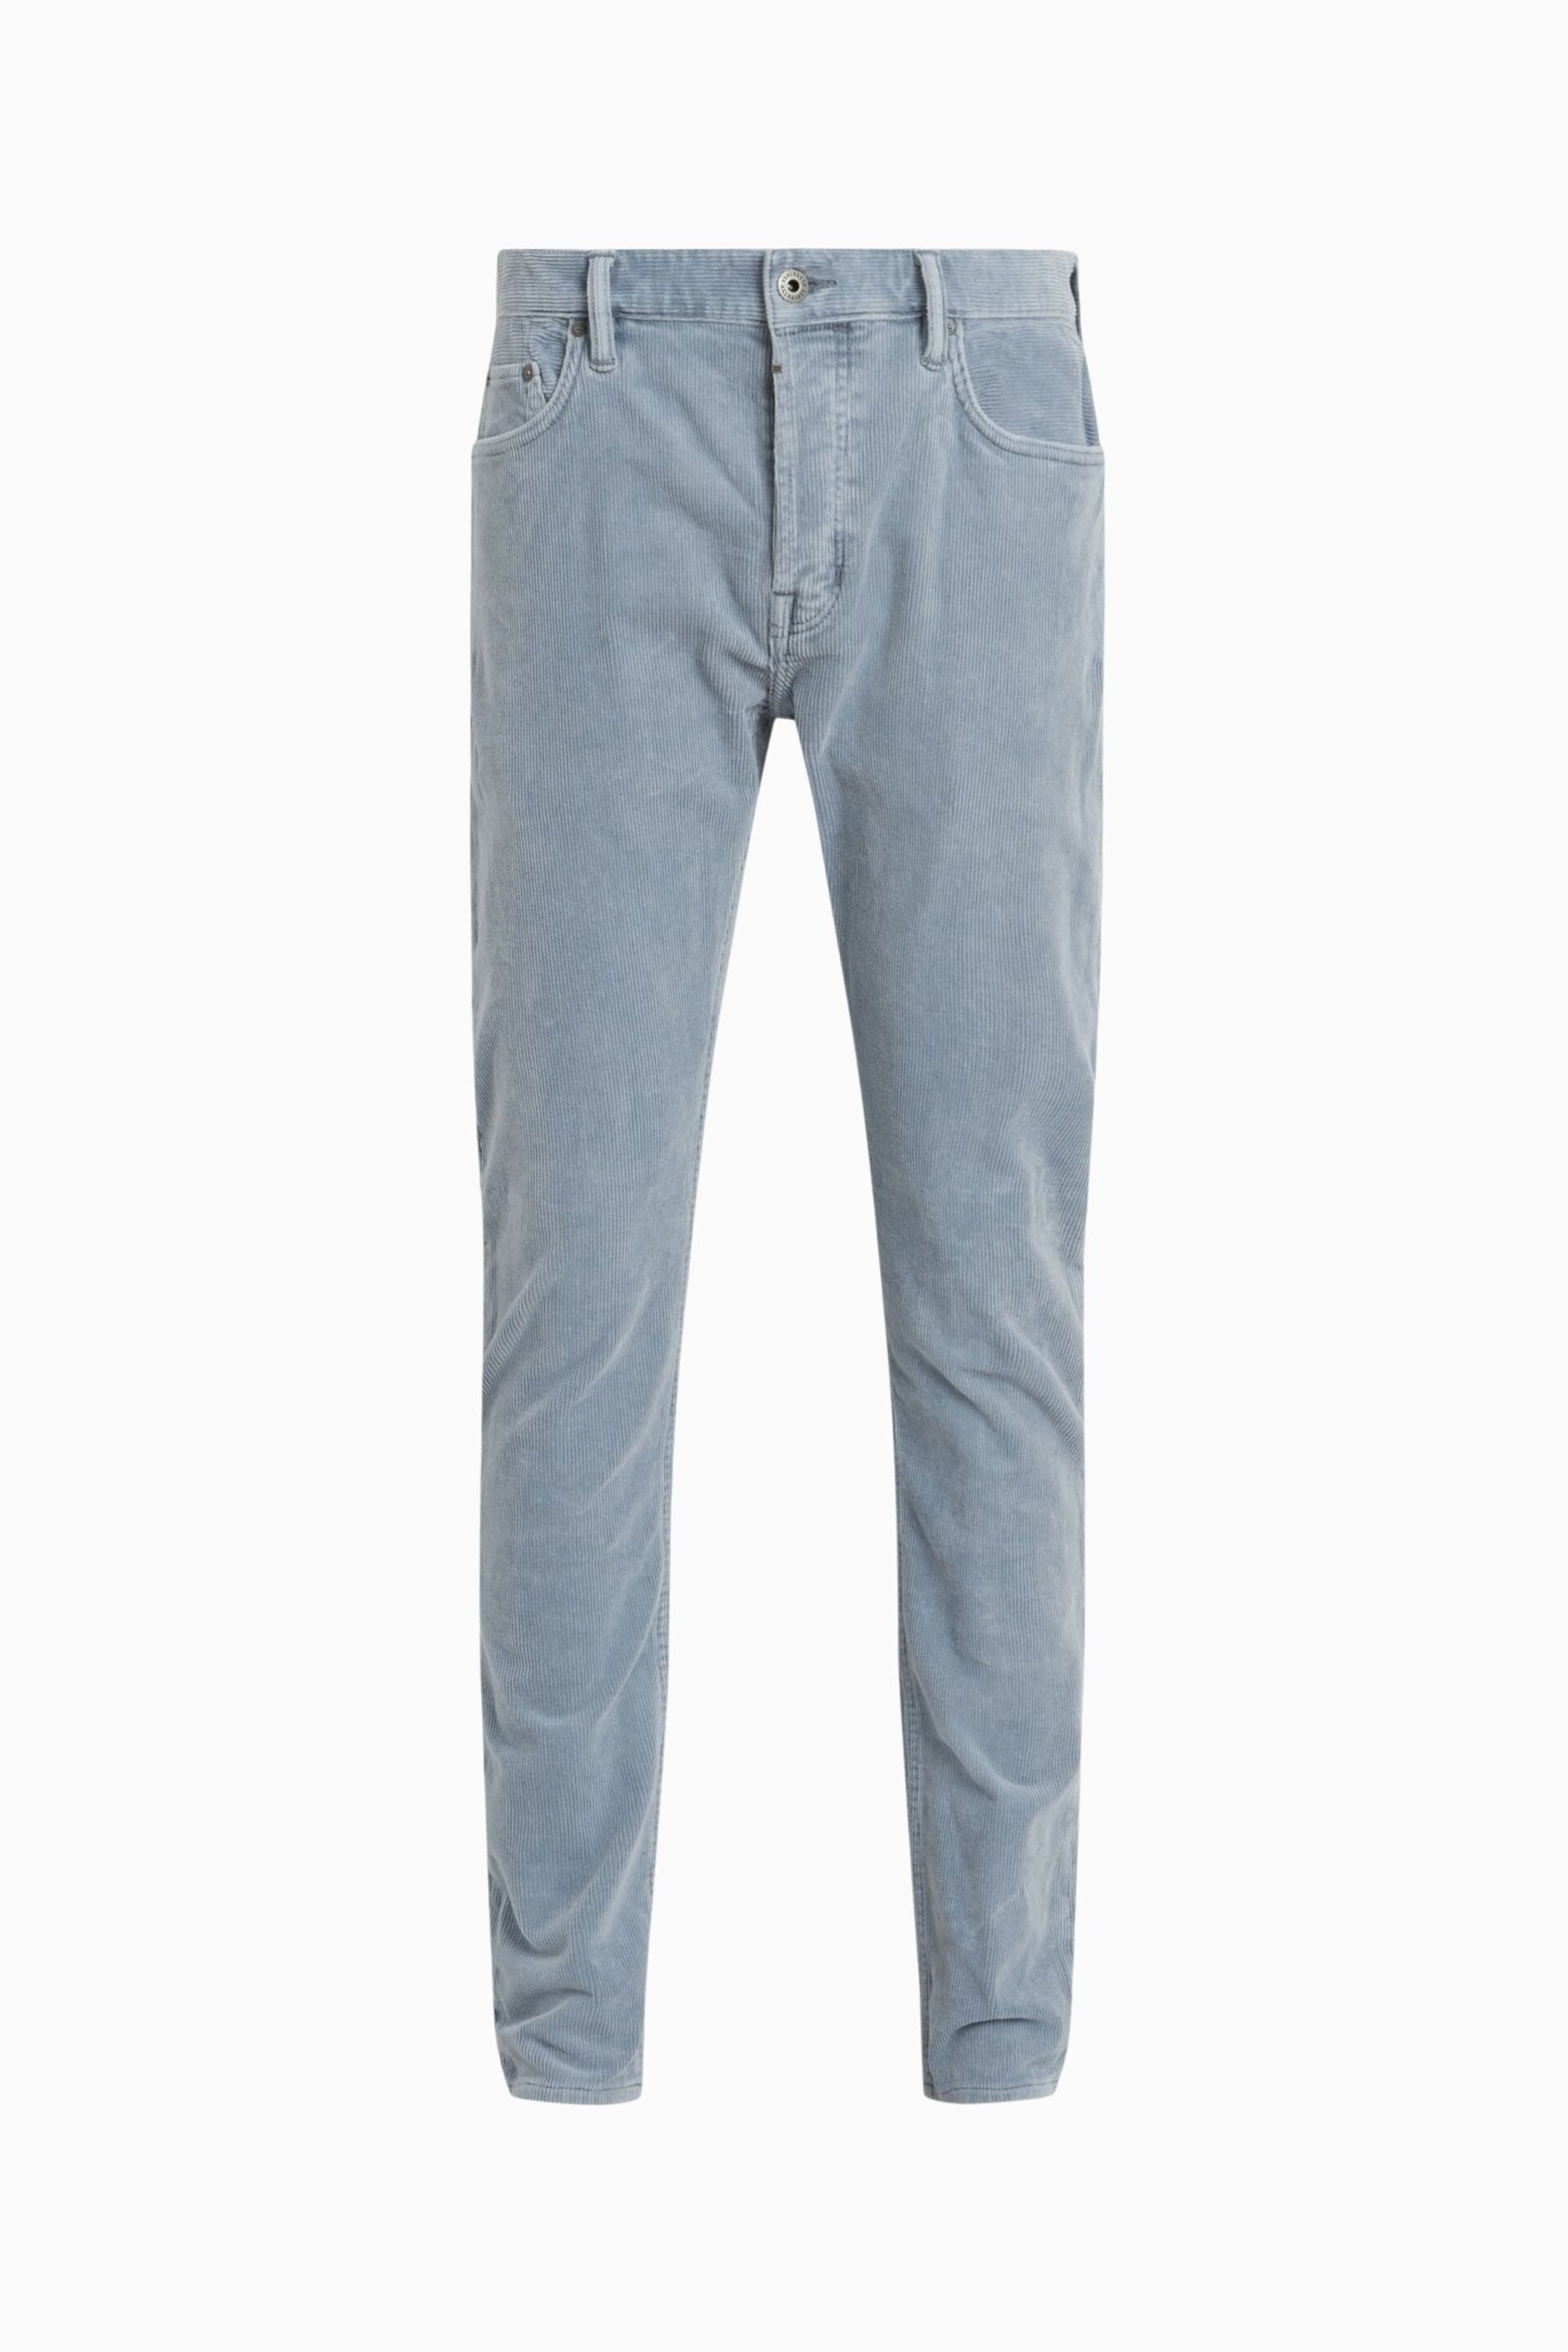 AllSaints Blue Rex Corduroy Jeans - Image 6 of 6